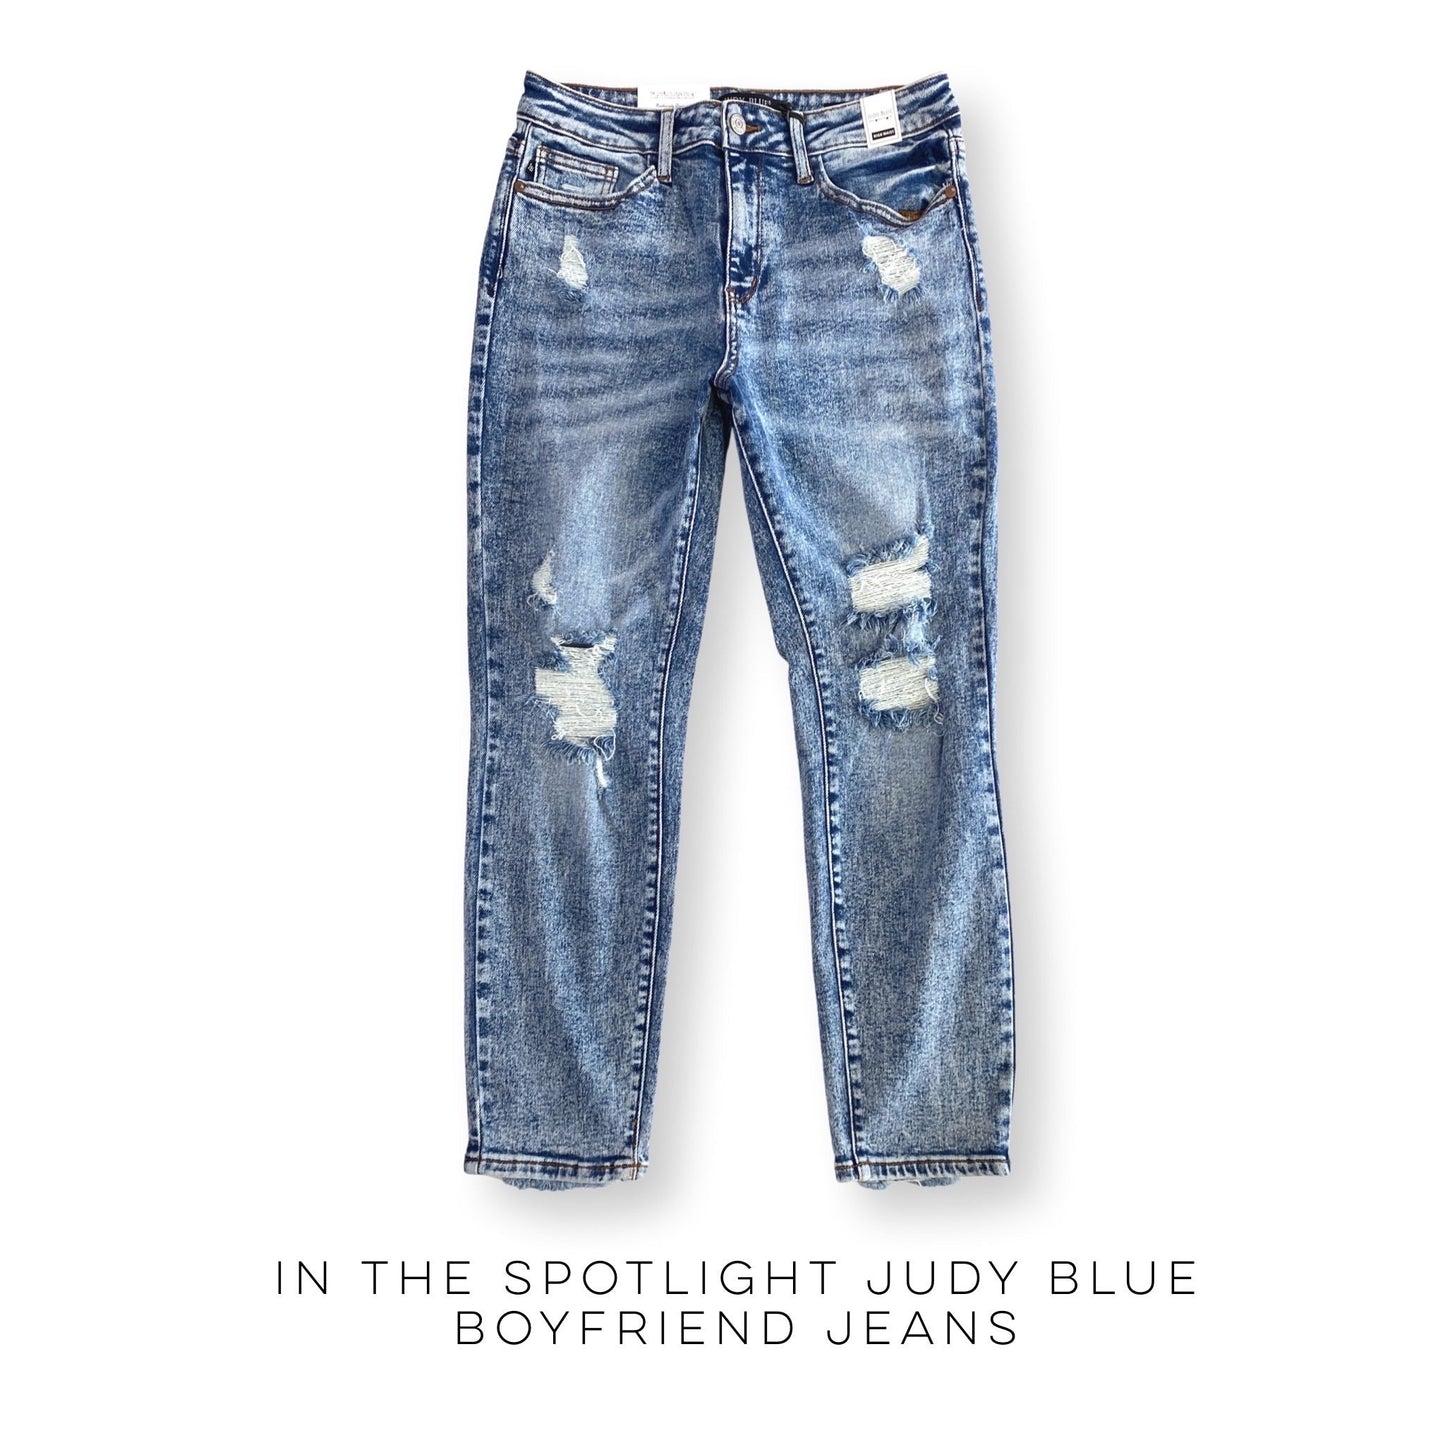 In the Spotlight Judy Blue Boyfriend Jeans